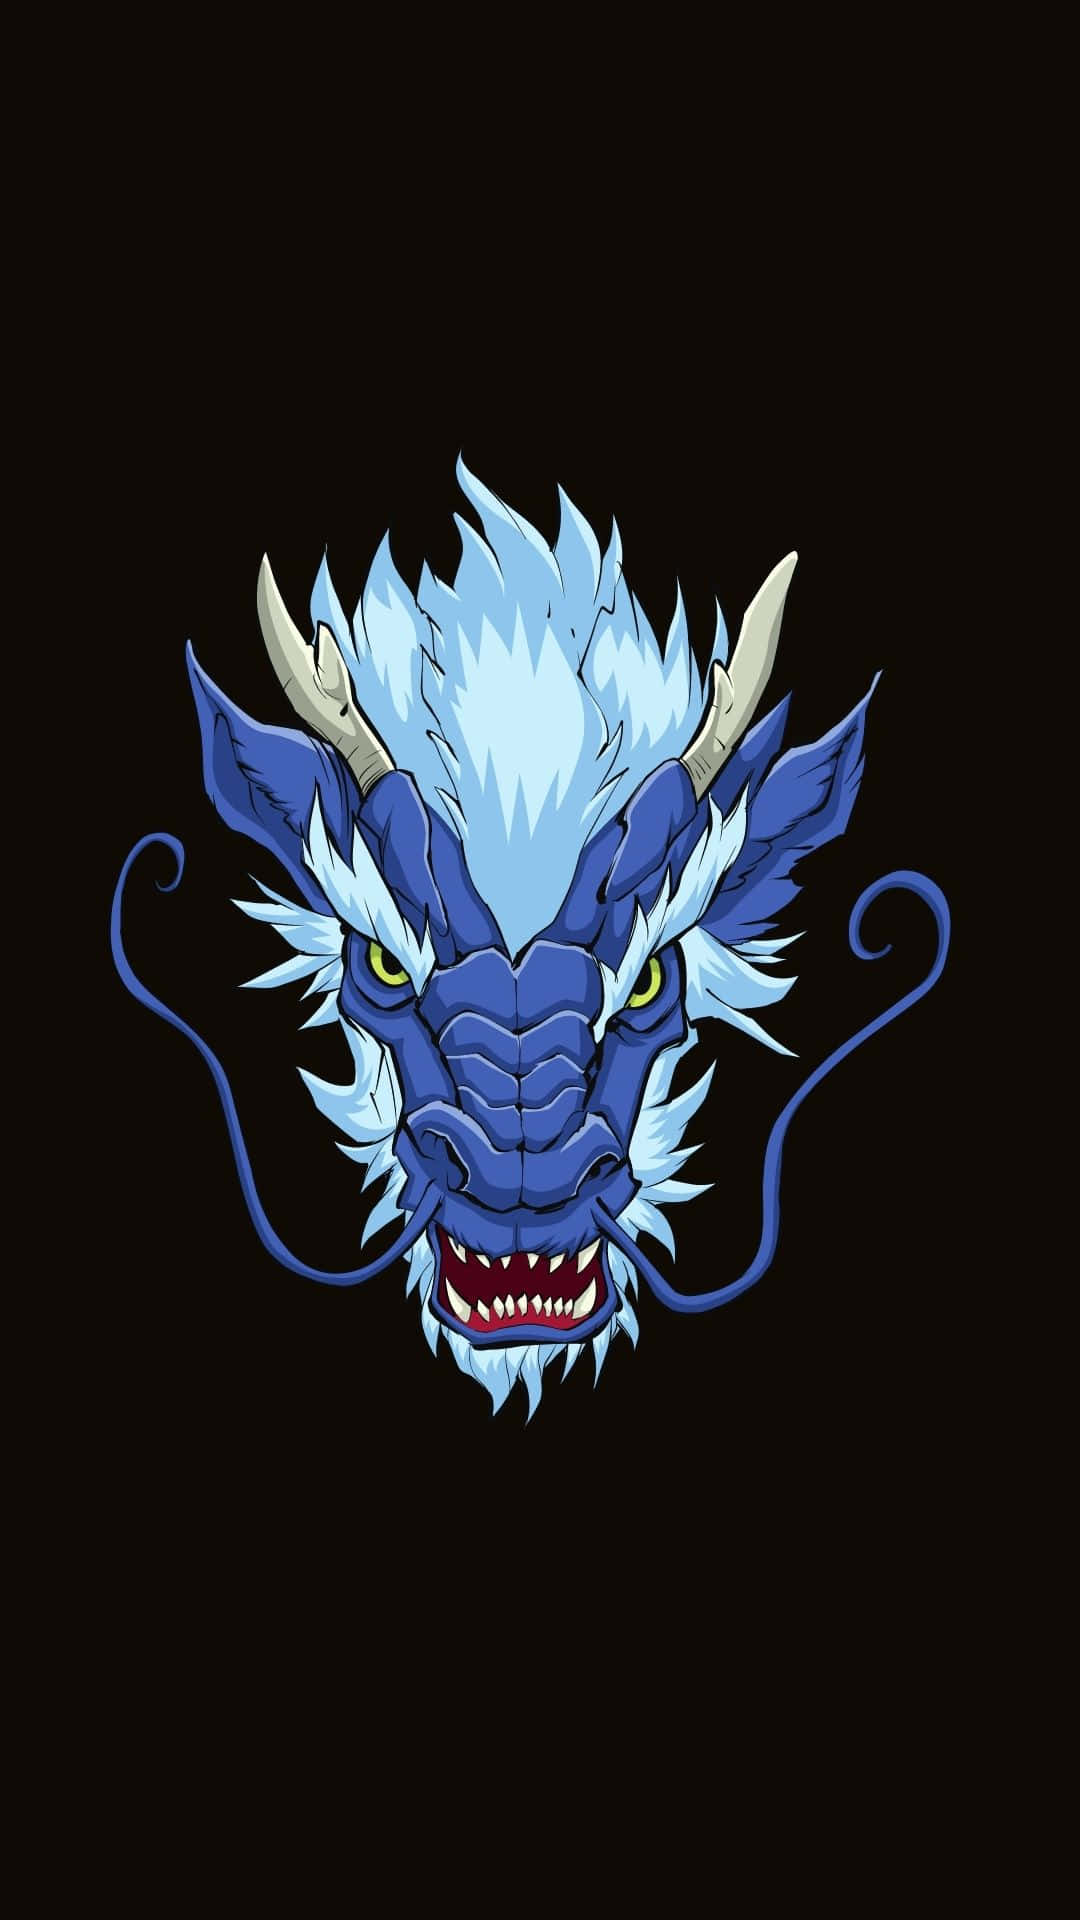 Impresionantey Majestuoso Dragón Azul Fondo de pantalla